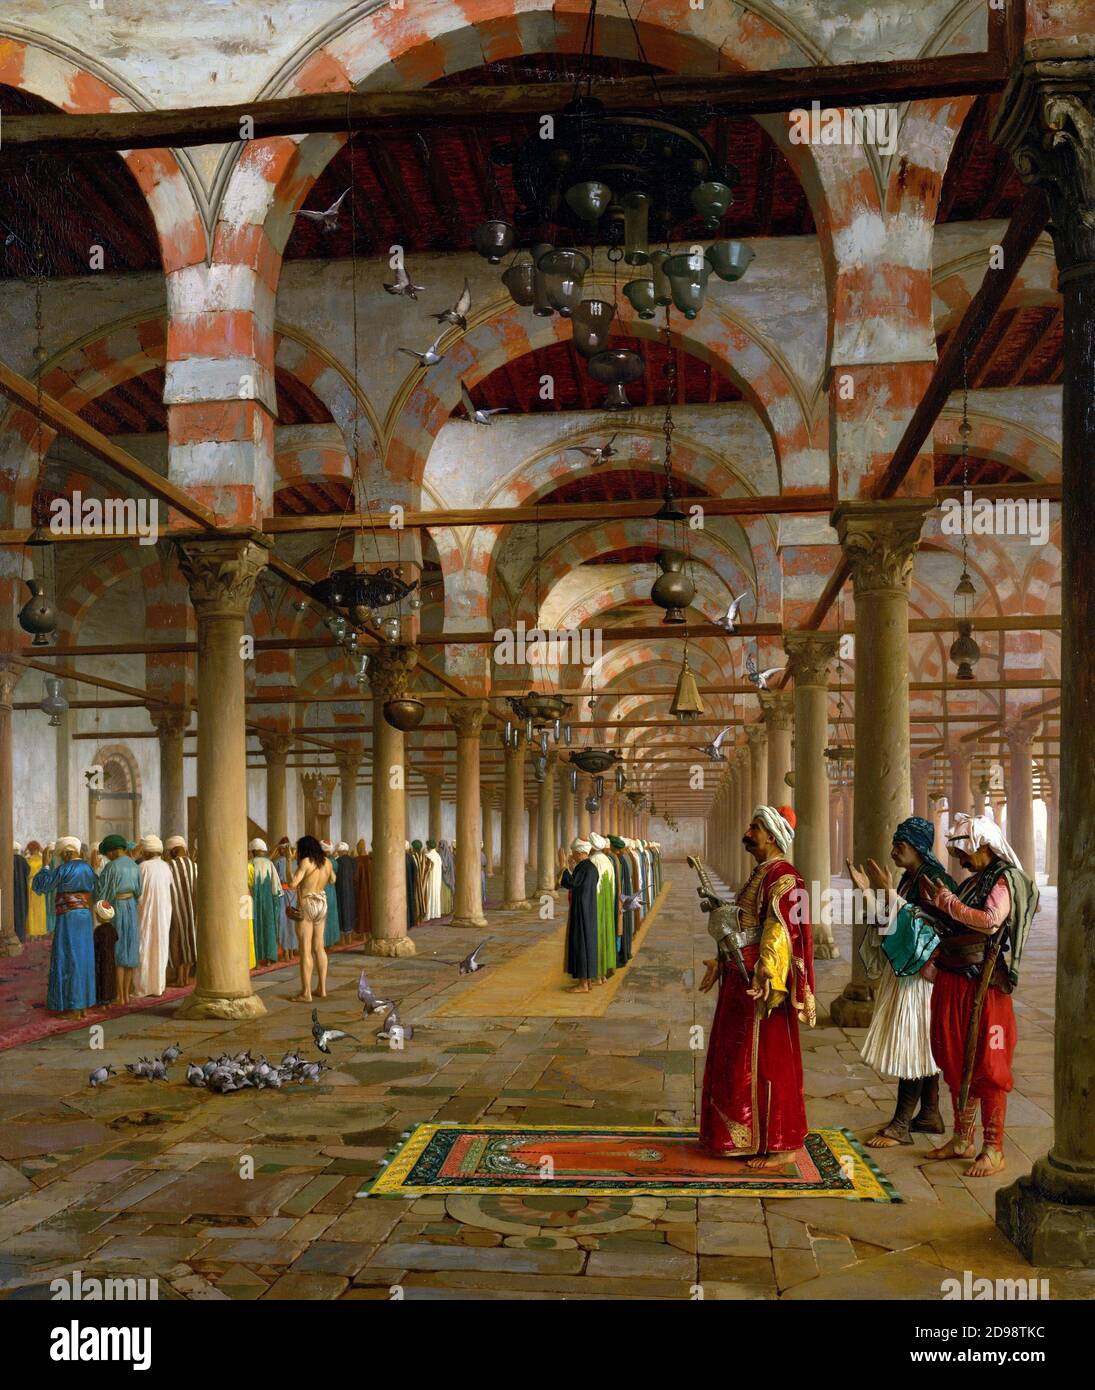 Prière dans la mosquée par l'artiste orientaliste français Jean-Léon Géradôme (1824-1904), huile sur toile, 1871 Banque D'Images